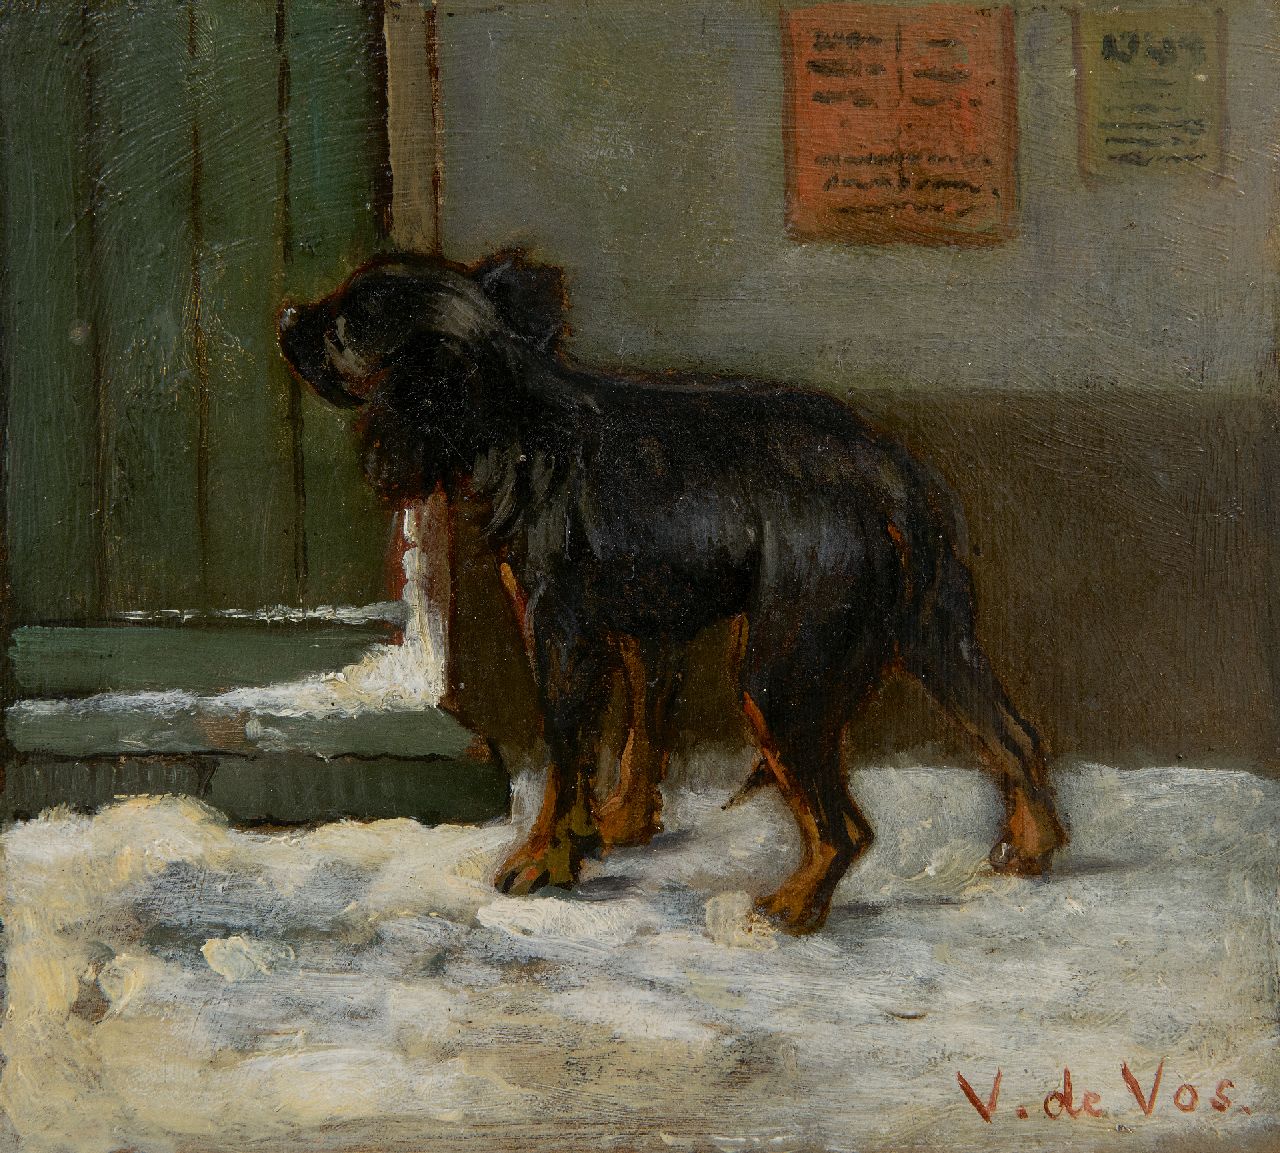 Vos V. de | Vincent de Vos | Schilderijen te koop aangeboden | Op de bestemming aangekomen, olieverf op doek 15,6 x 17,1 cm, gesigneerd rechtsonder